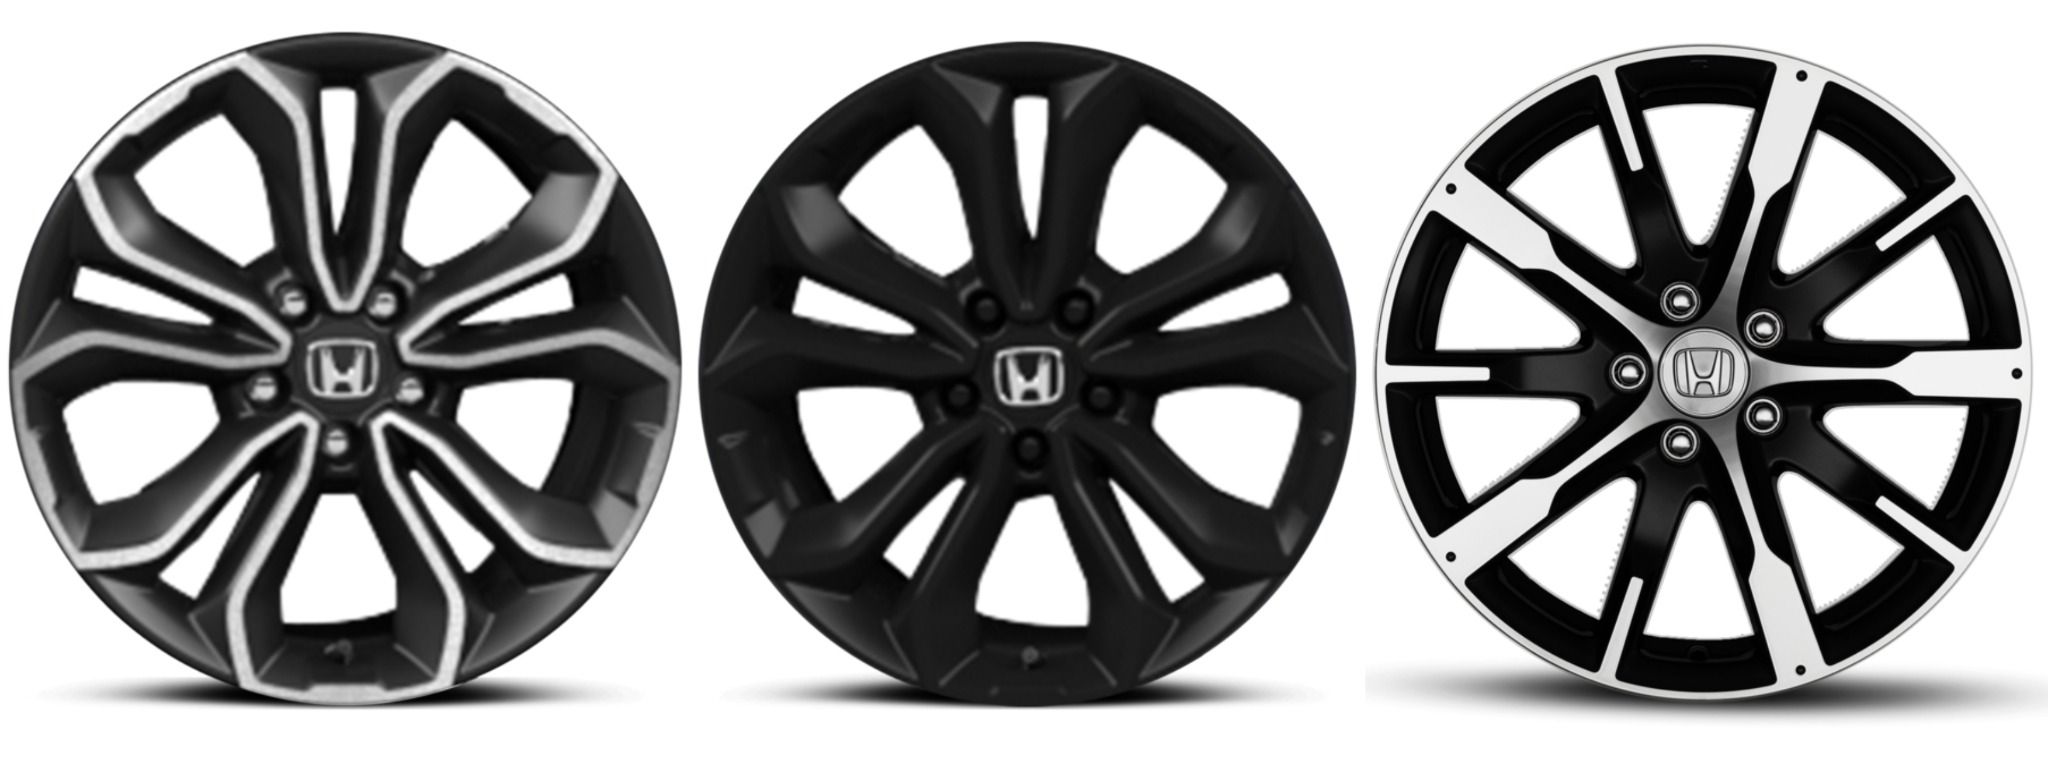 Honda cr v  3 different types of alloys